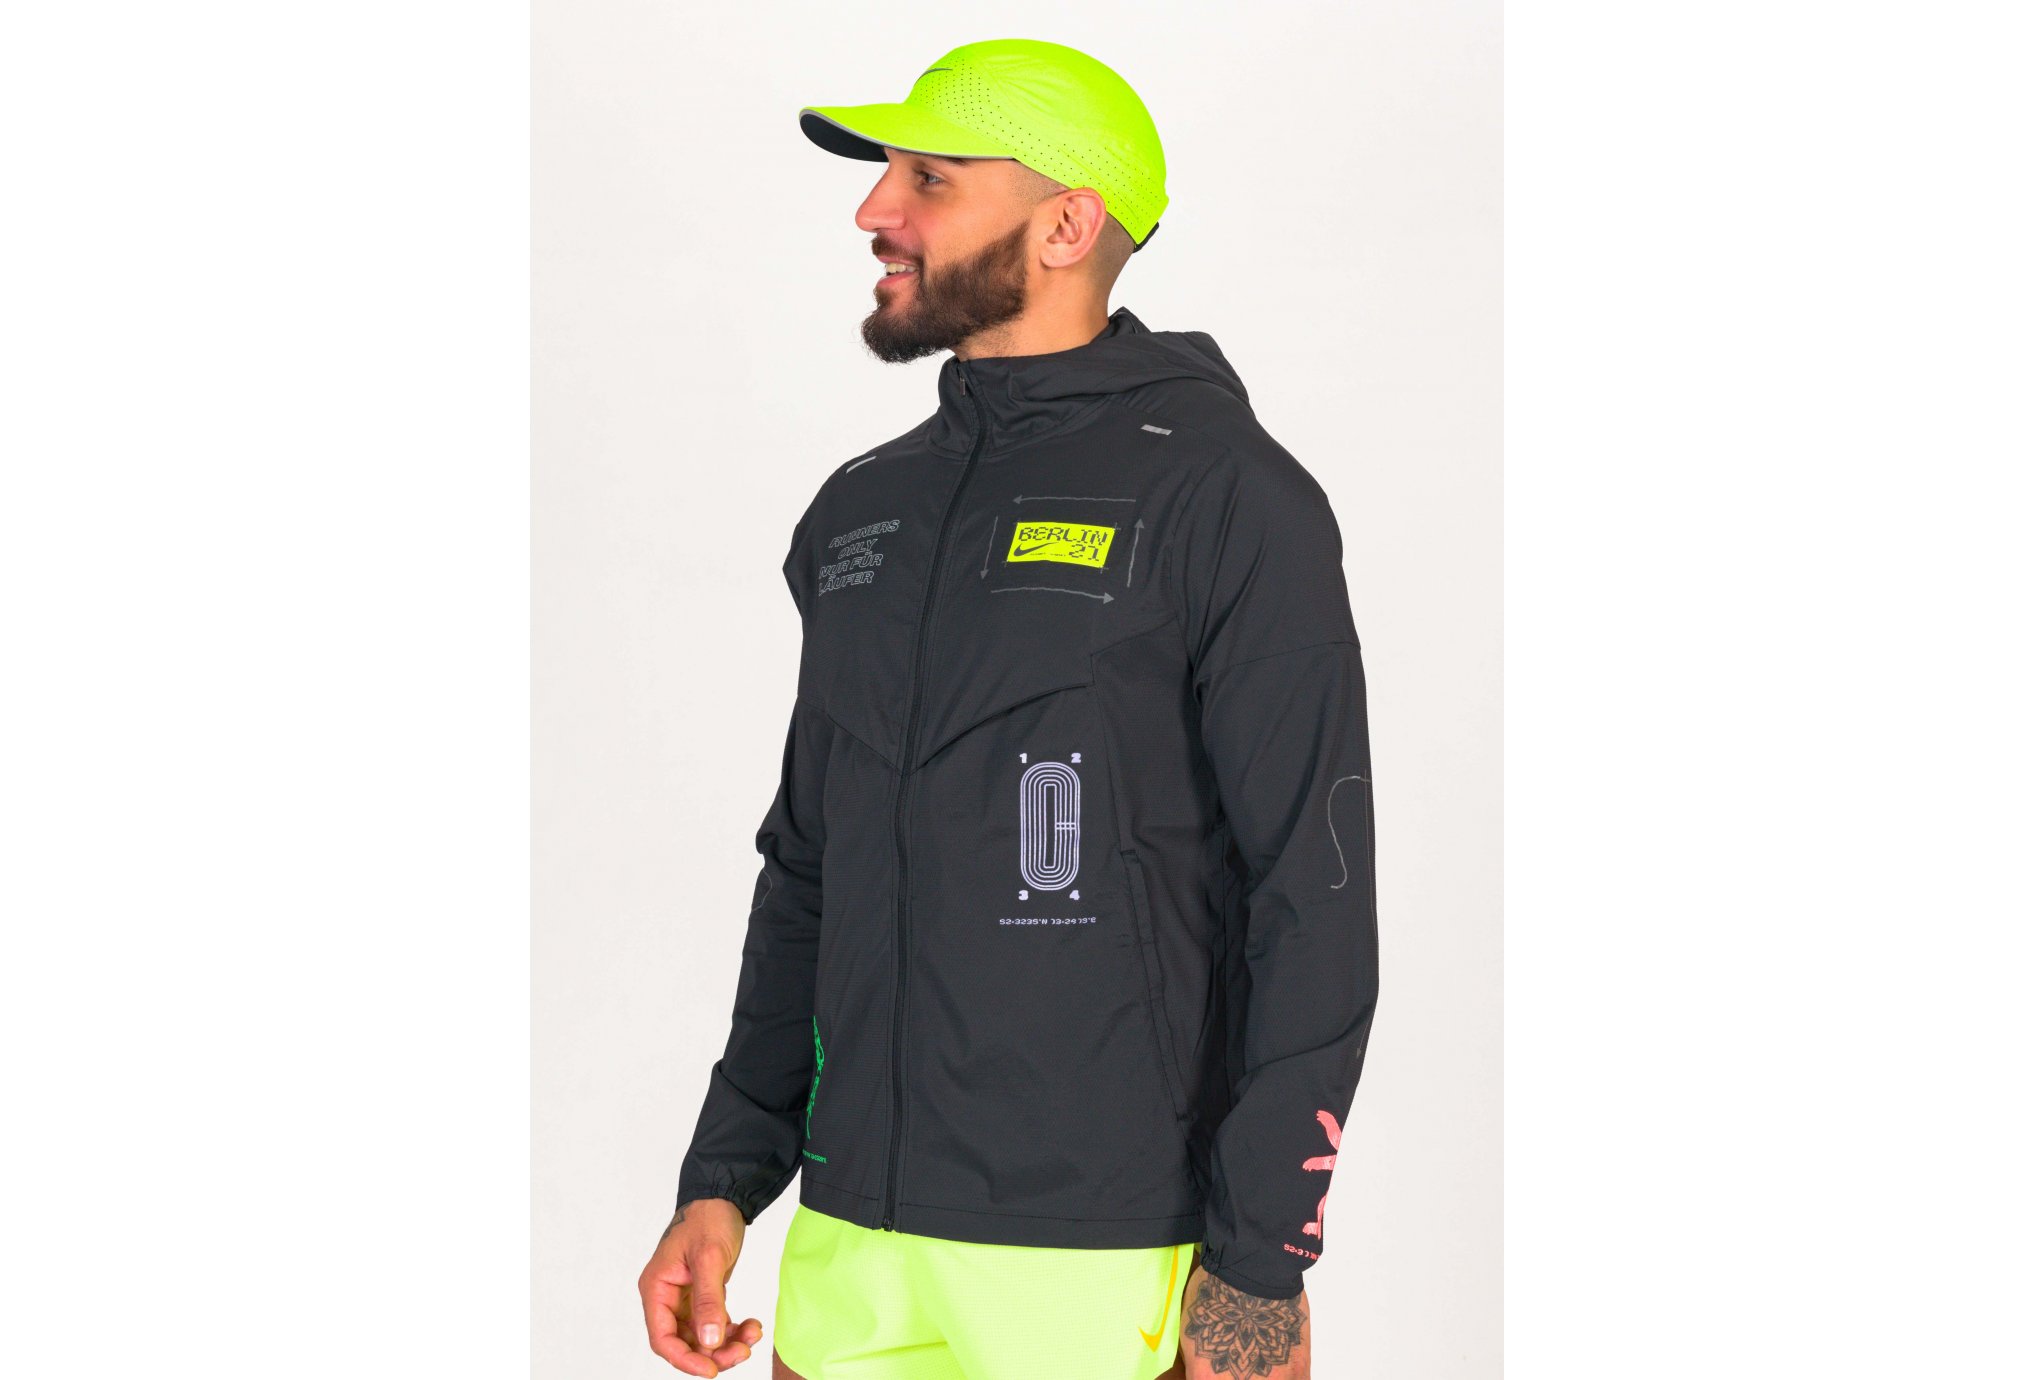 Nike Repel UV Windrunner Berlin M vêtement running homme : infos